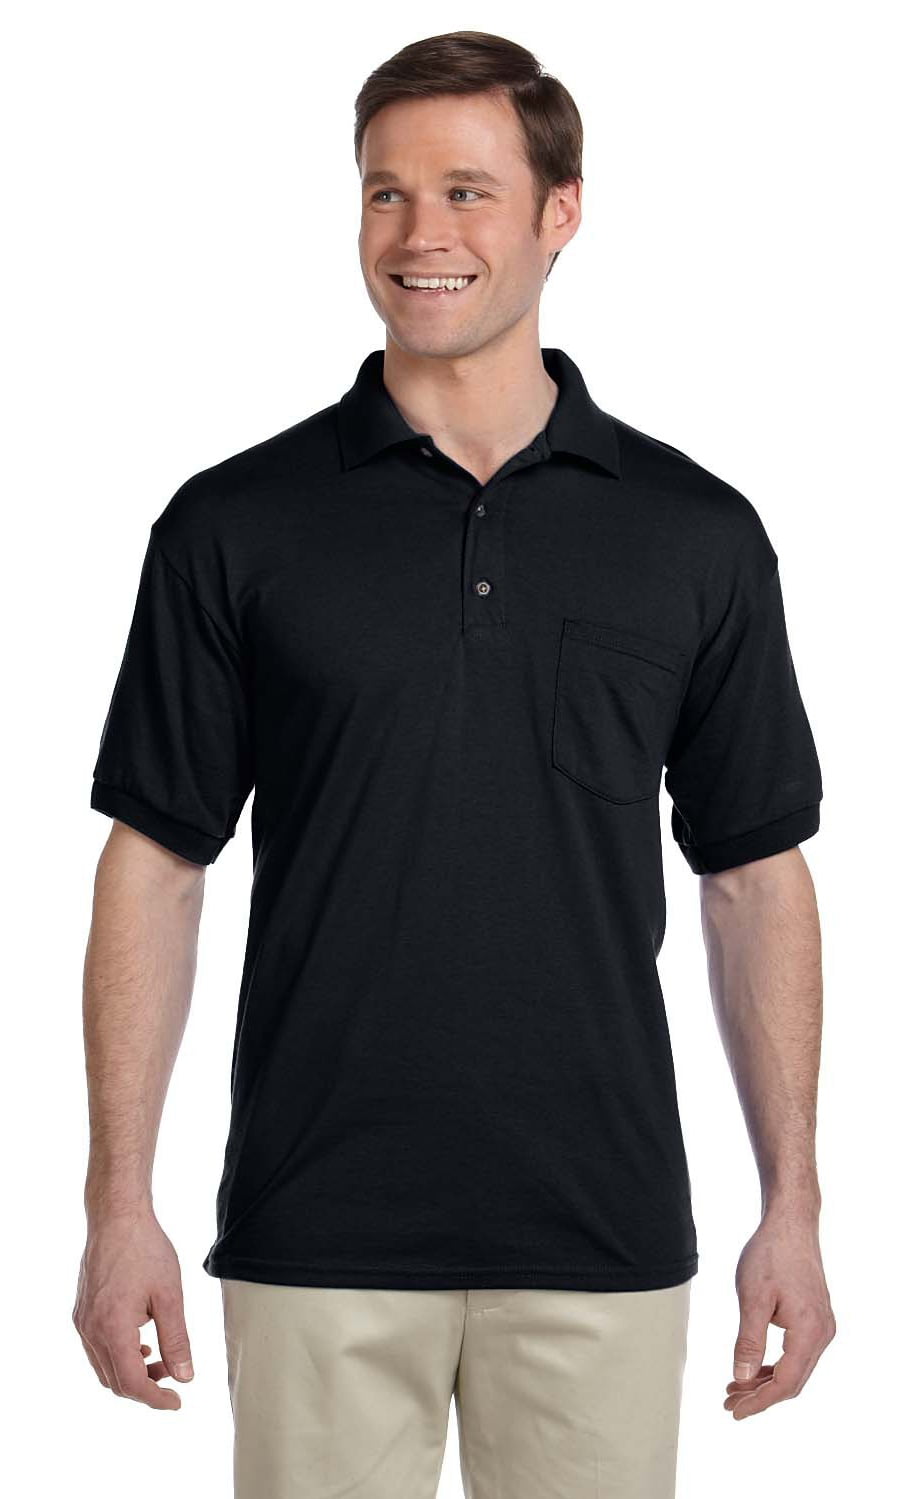 Gildan - The Gildan Adult 6 oz, 50/50 Jersey Polo Shirt with Pocket ...